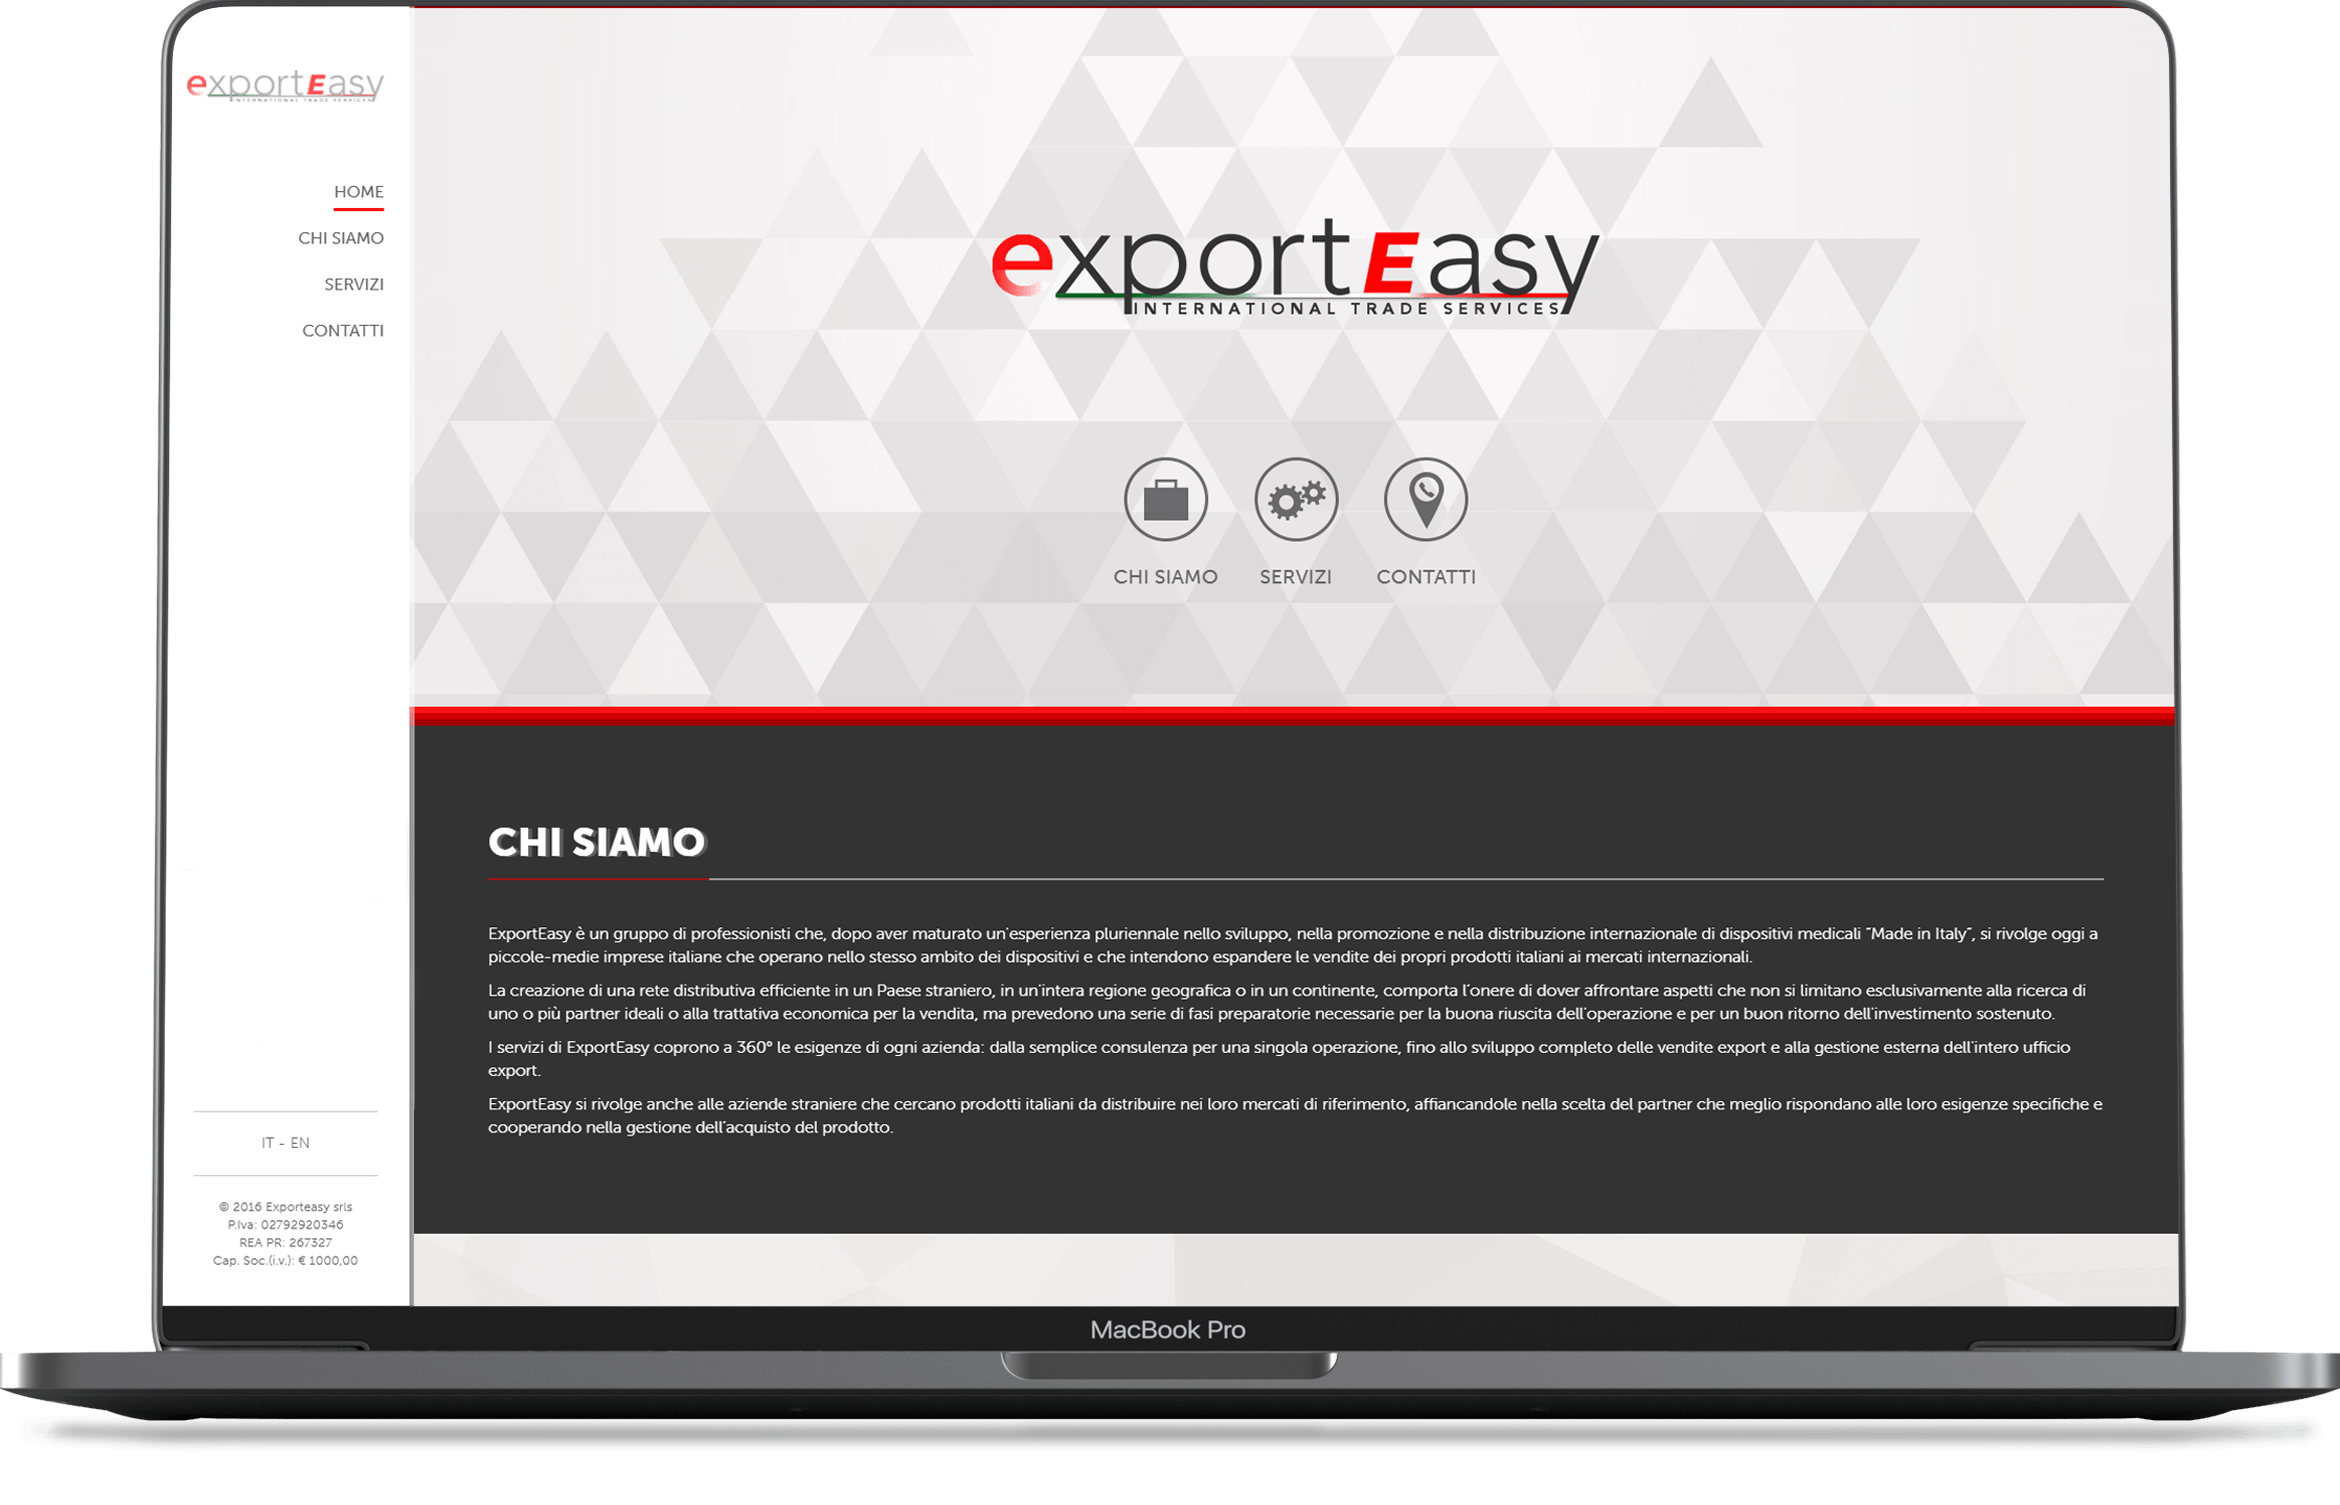 pagina interna Exporteasy Onepage